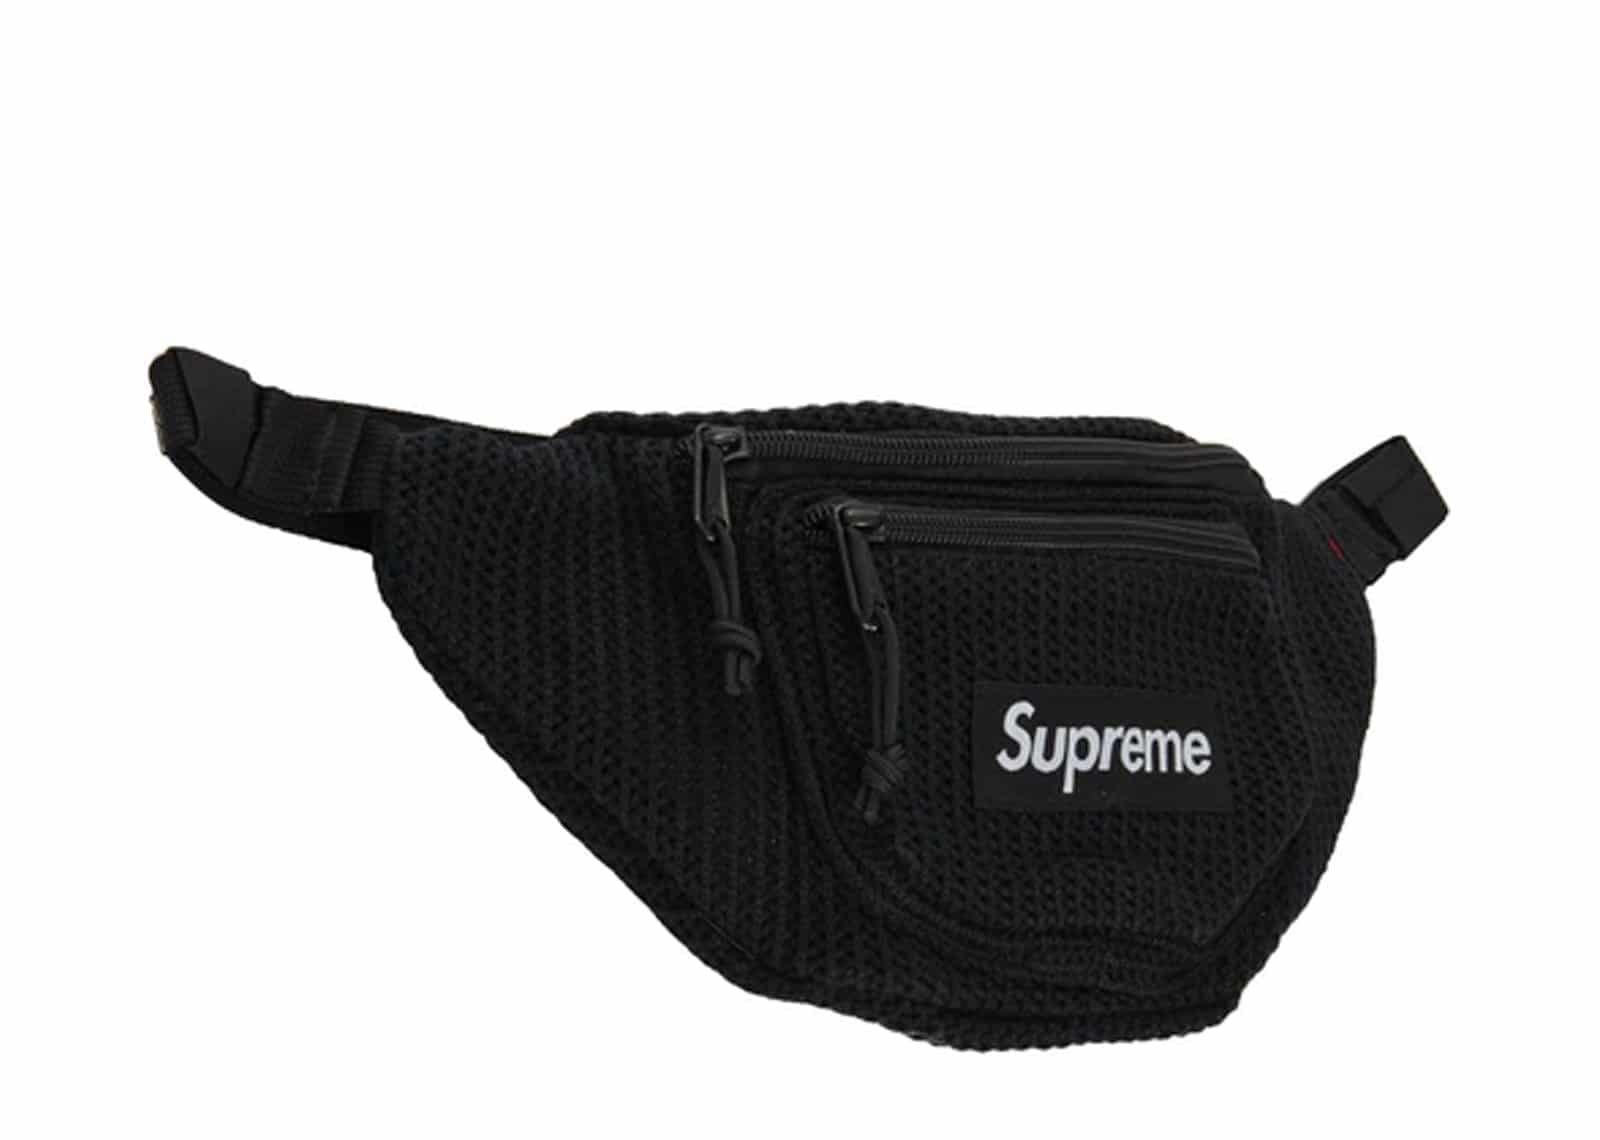 Supreme Black String Waist Bag